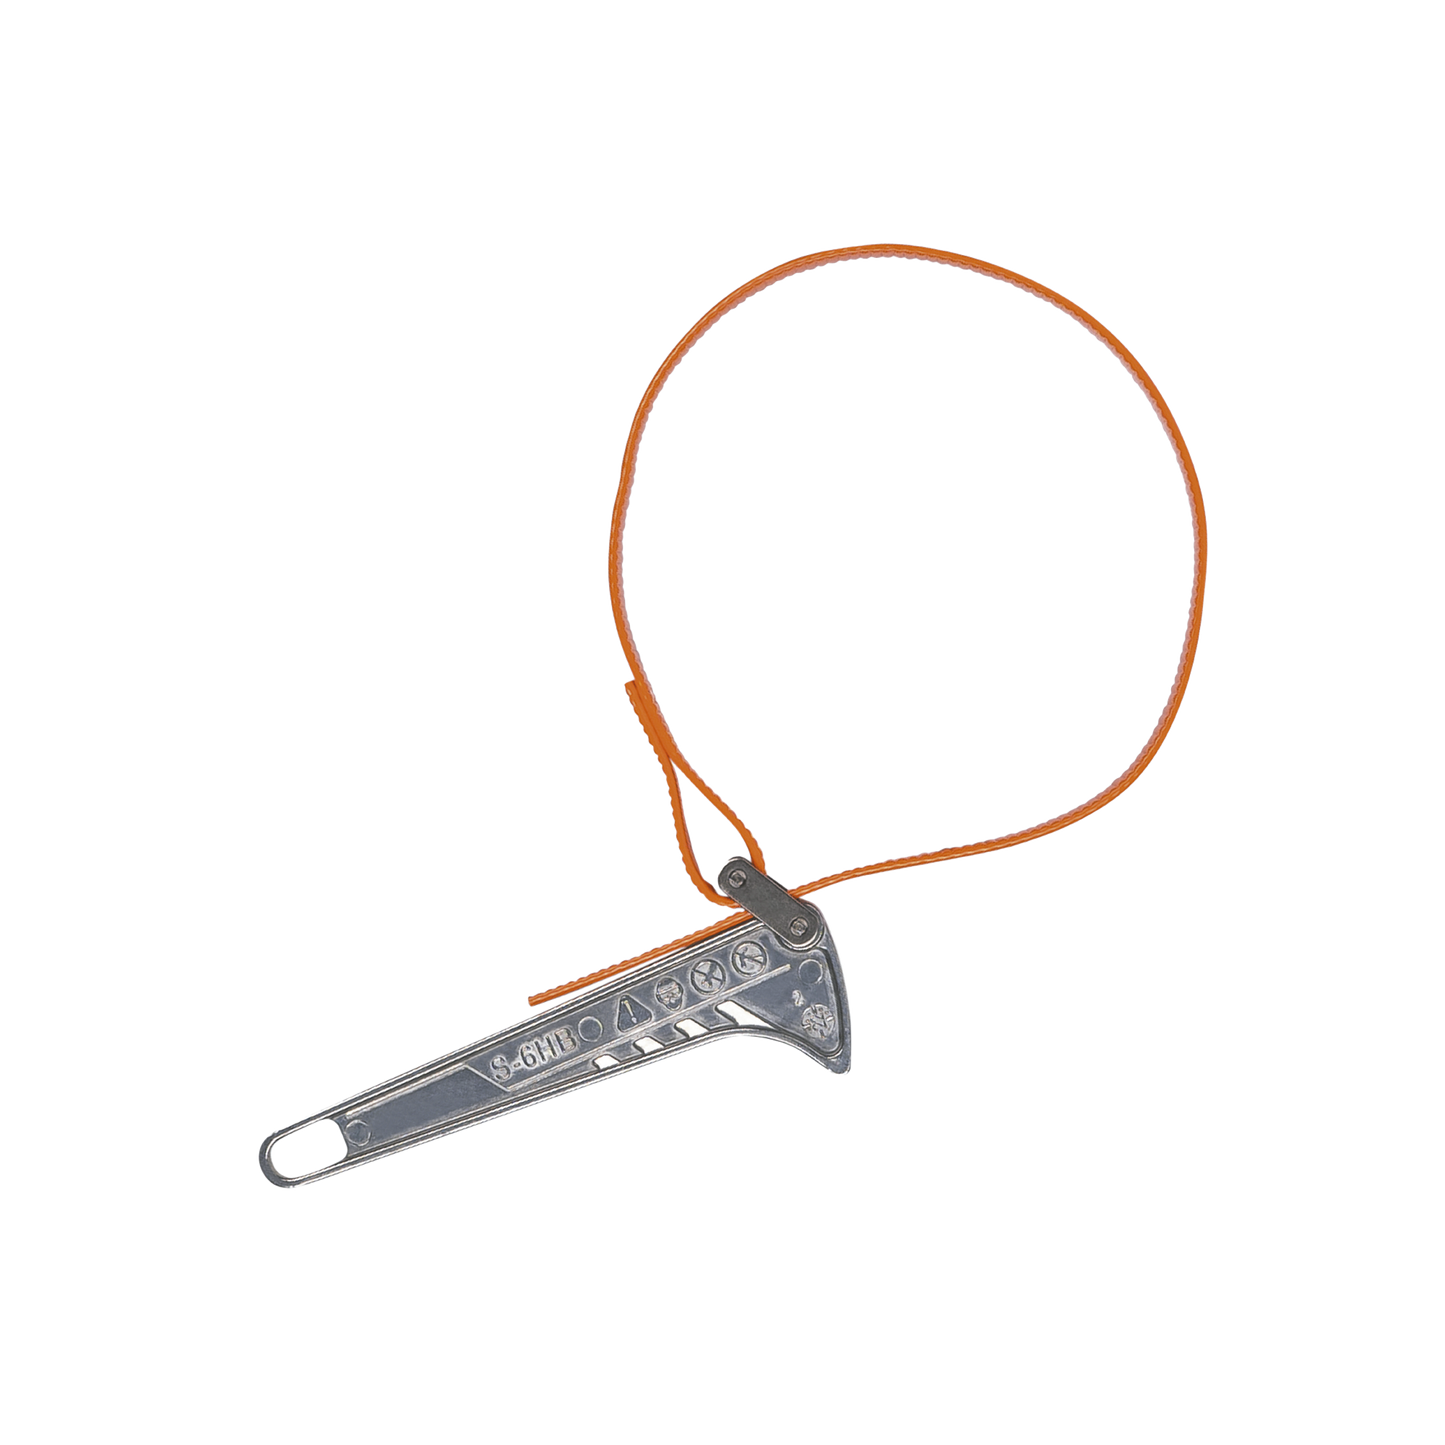 Llave de Cinta Grip-It™ de 3.8 a 12.7 cm de diámetro y 30.5 cm de largo en forma de L. Ideal para Apretado / Aflojado de Tubos, Filtros, Barras, etc.